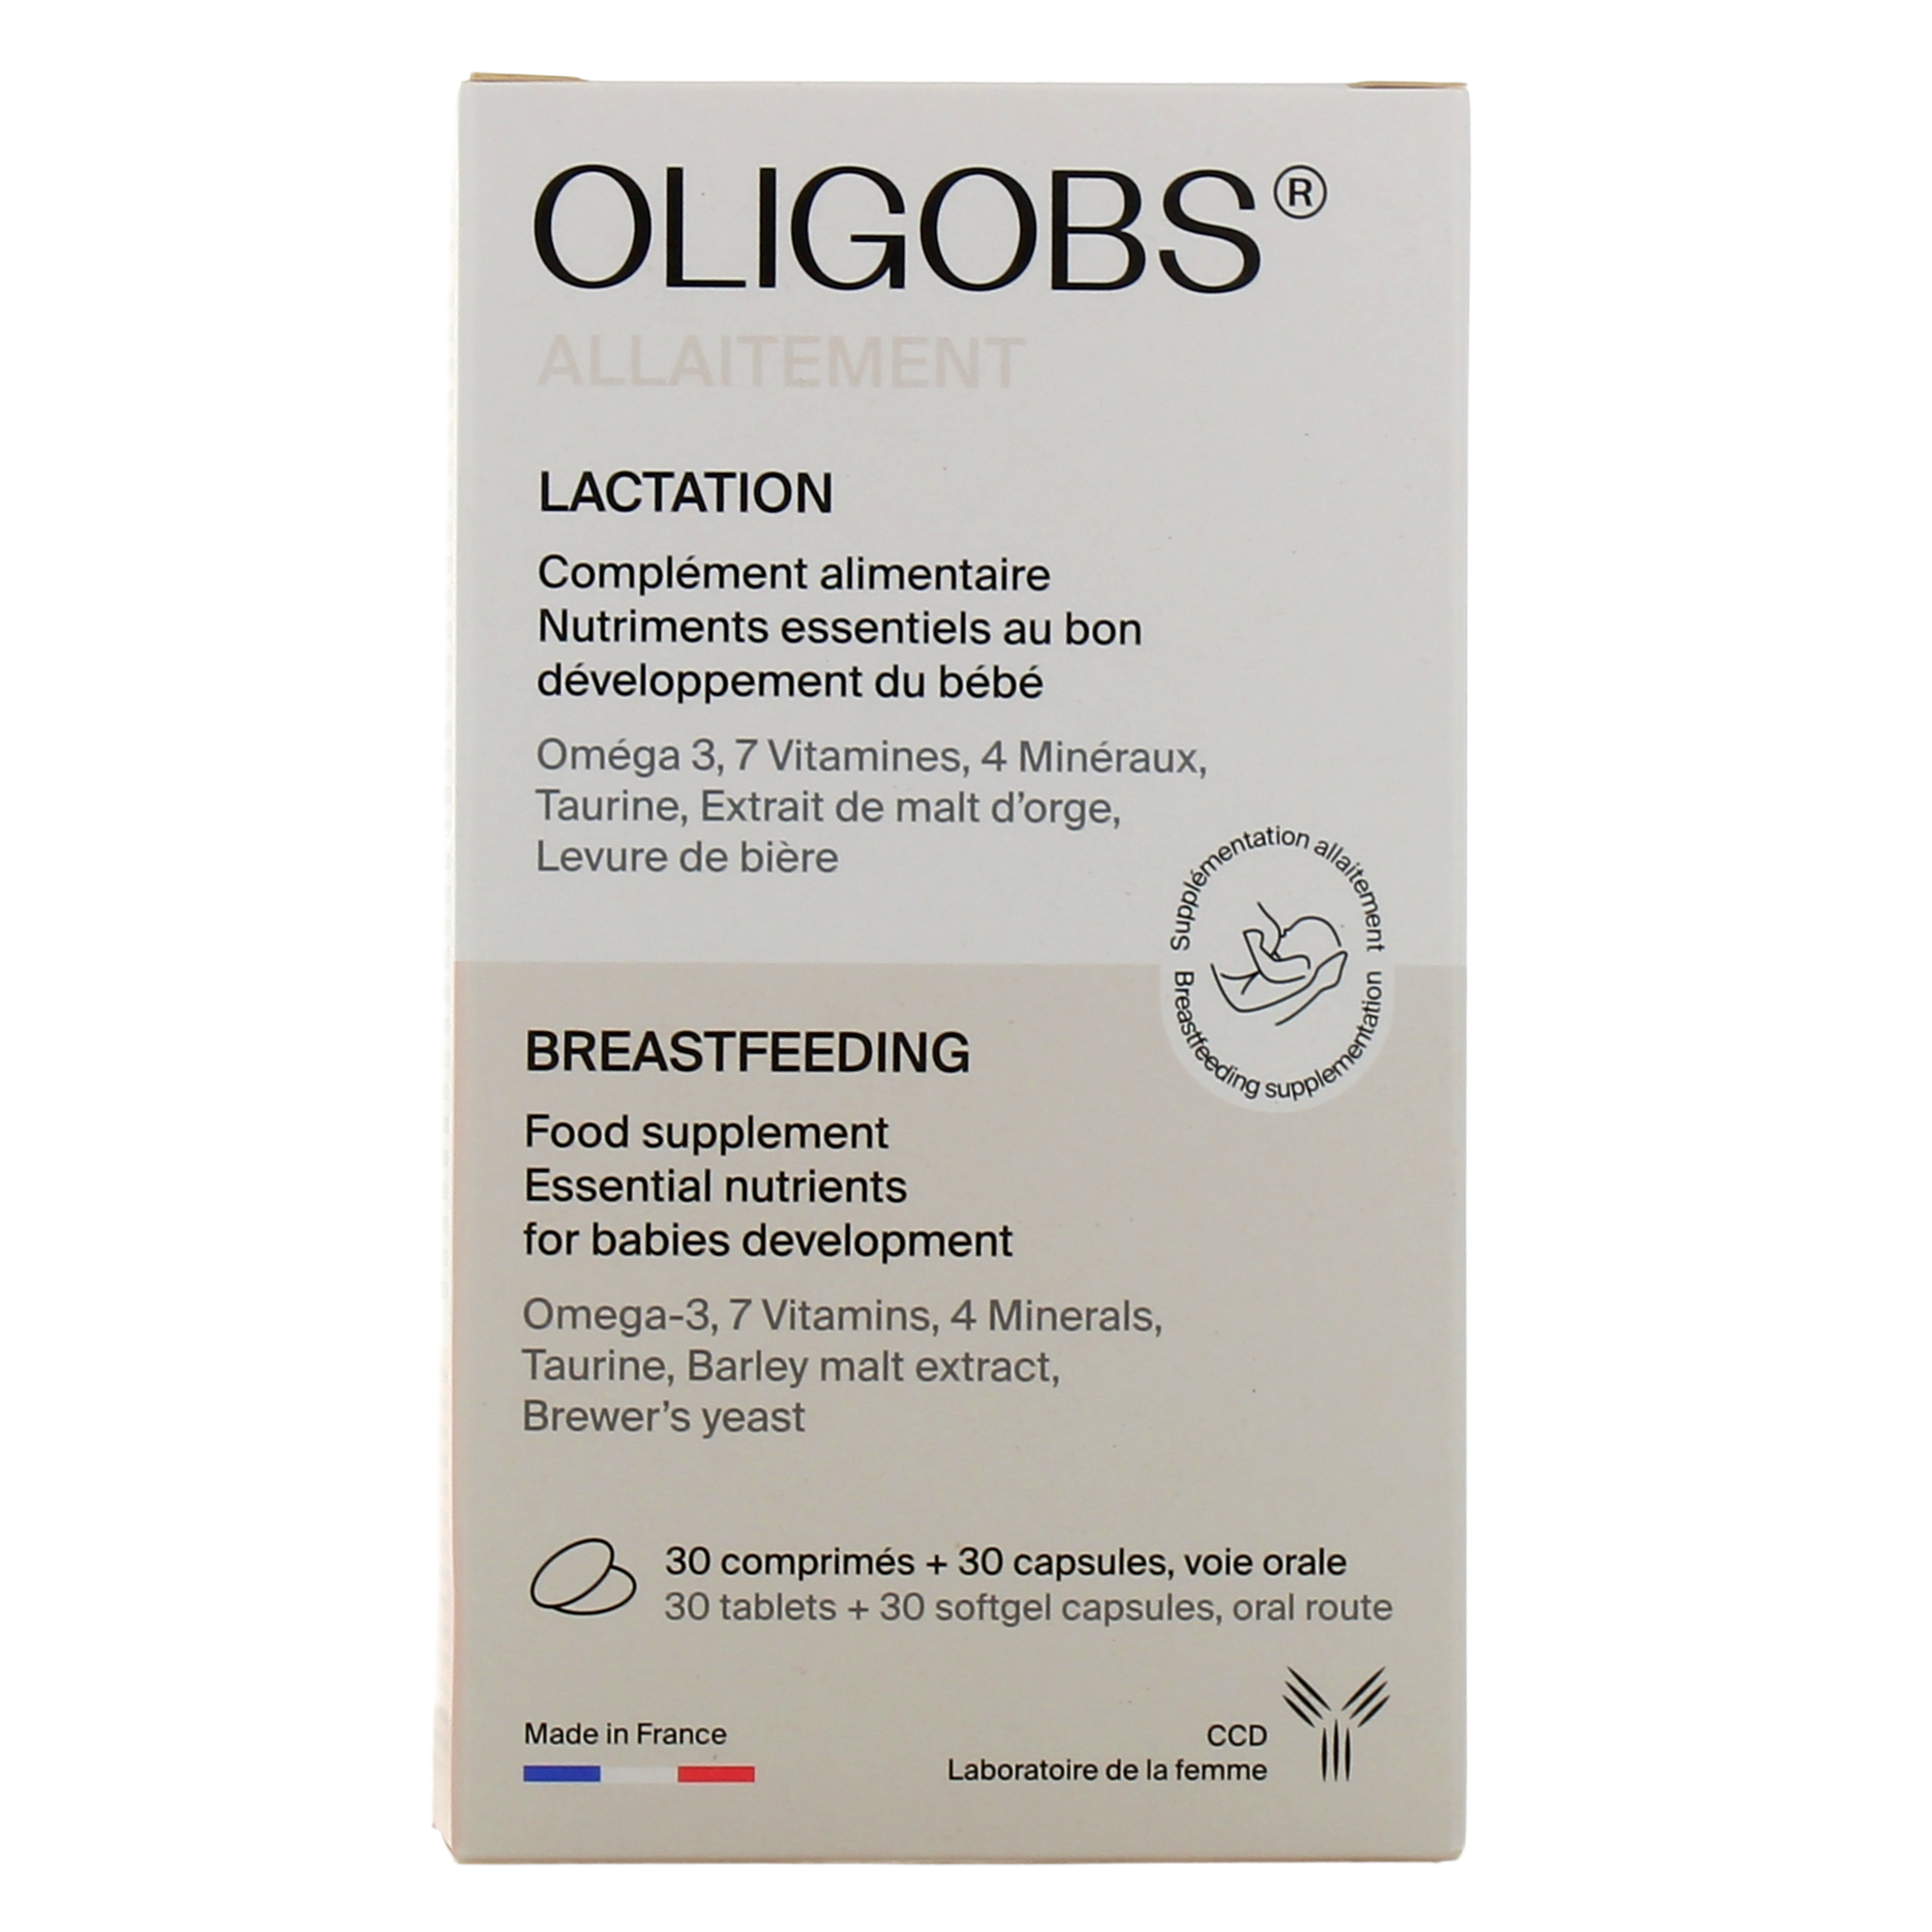 Oligobs Allaitement - Omega 3 - Complément alimentaire pour allaiter